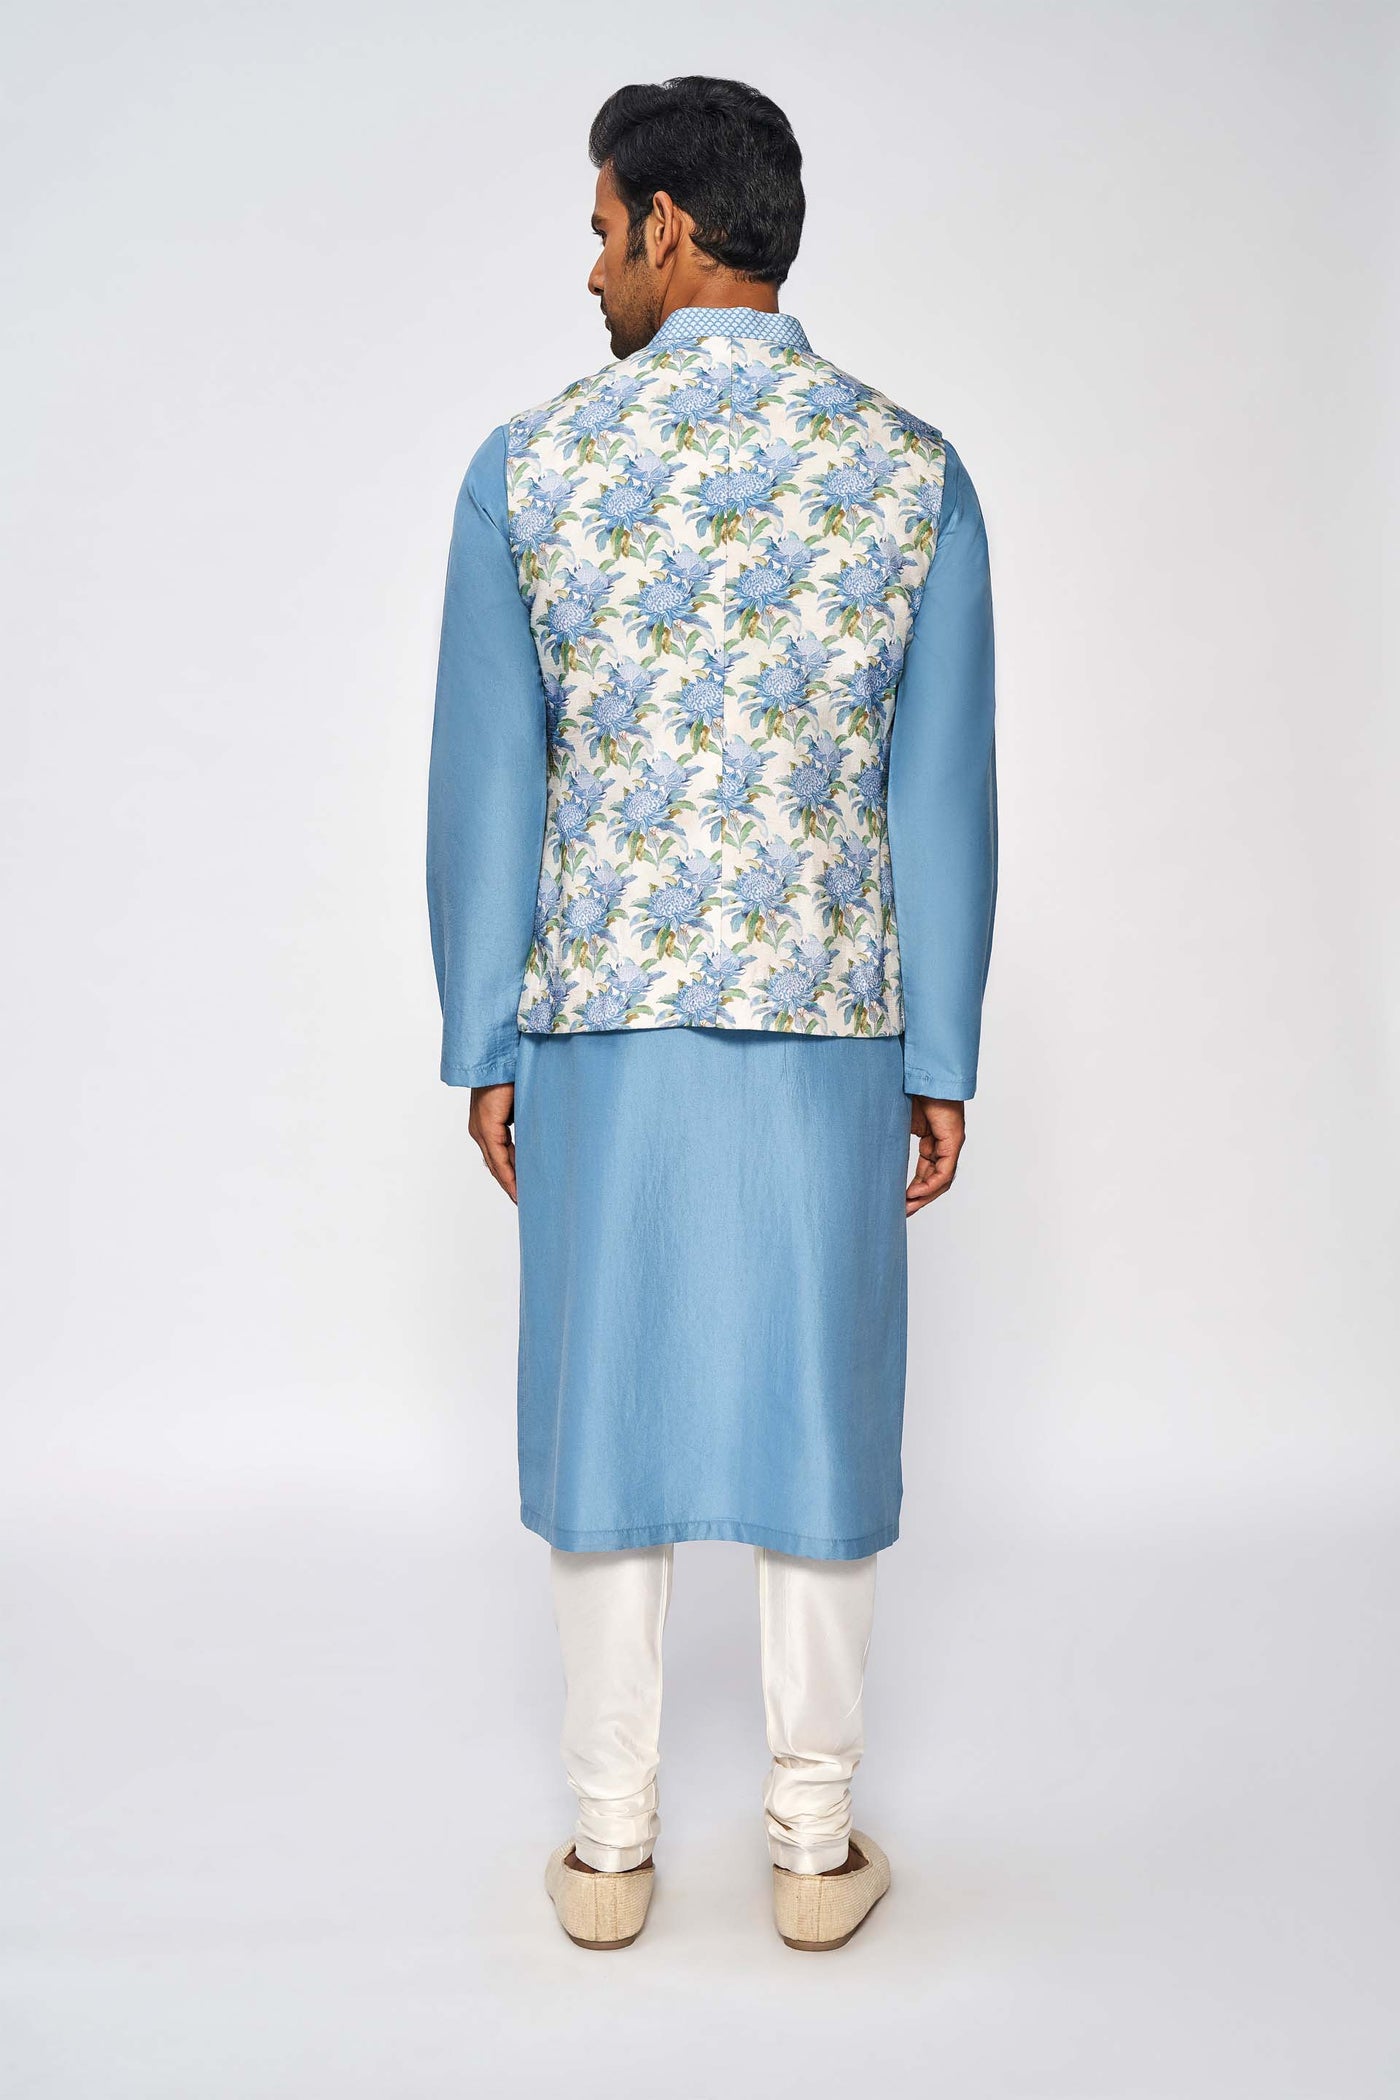 Anita Dongre menswear Armaan Bandi Powder Blue festive indian designer wear online shopping melange singapore